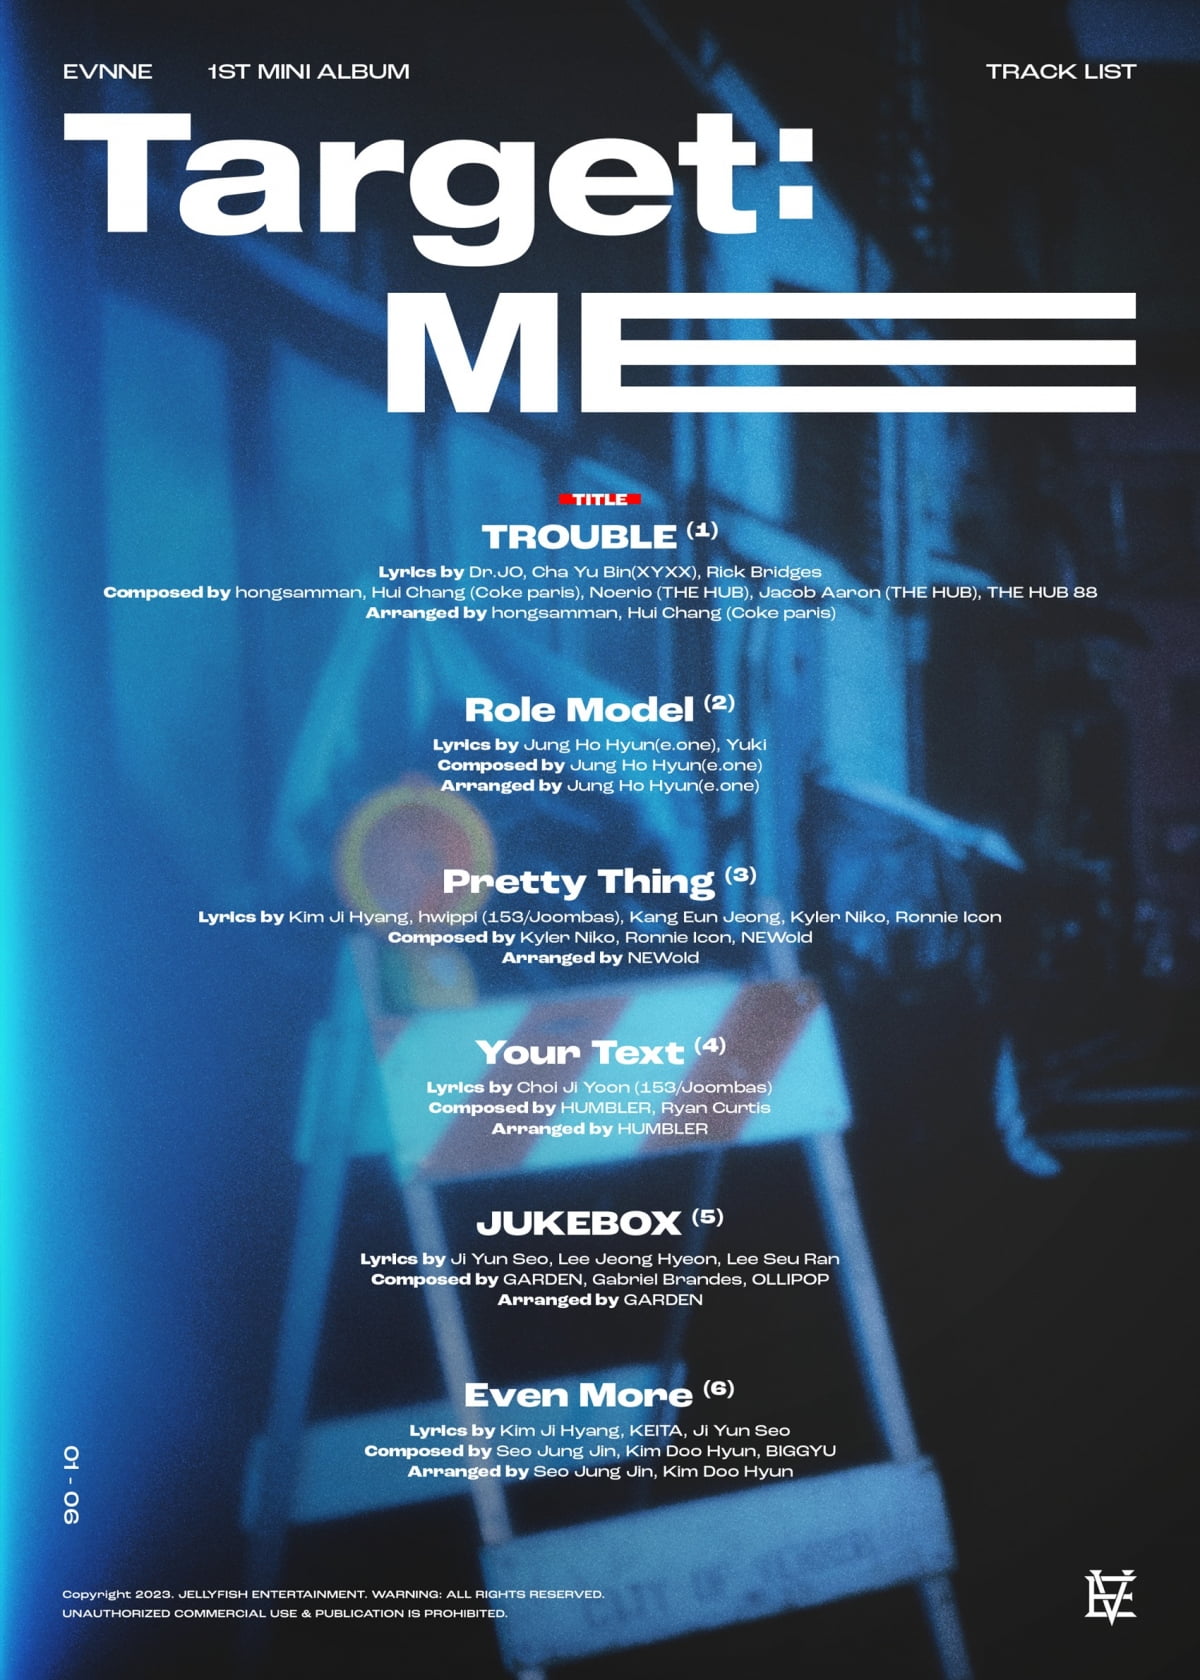 Group EVNNE reveals debut tracklist